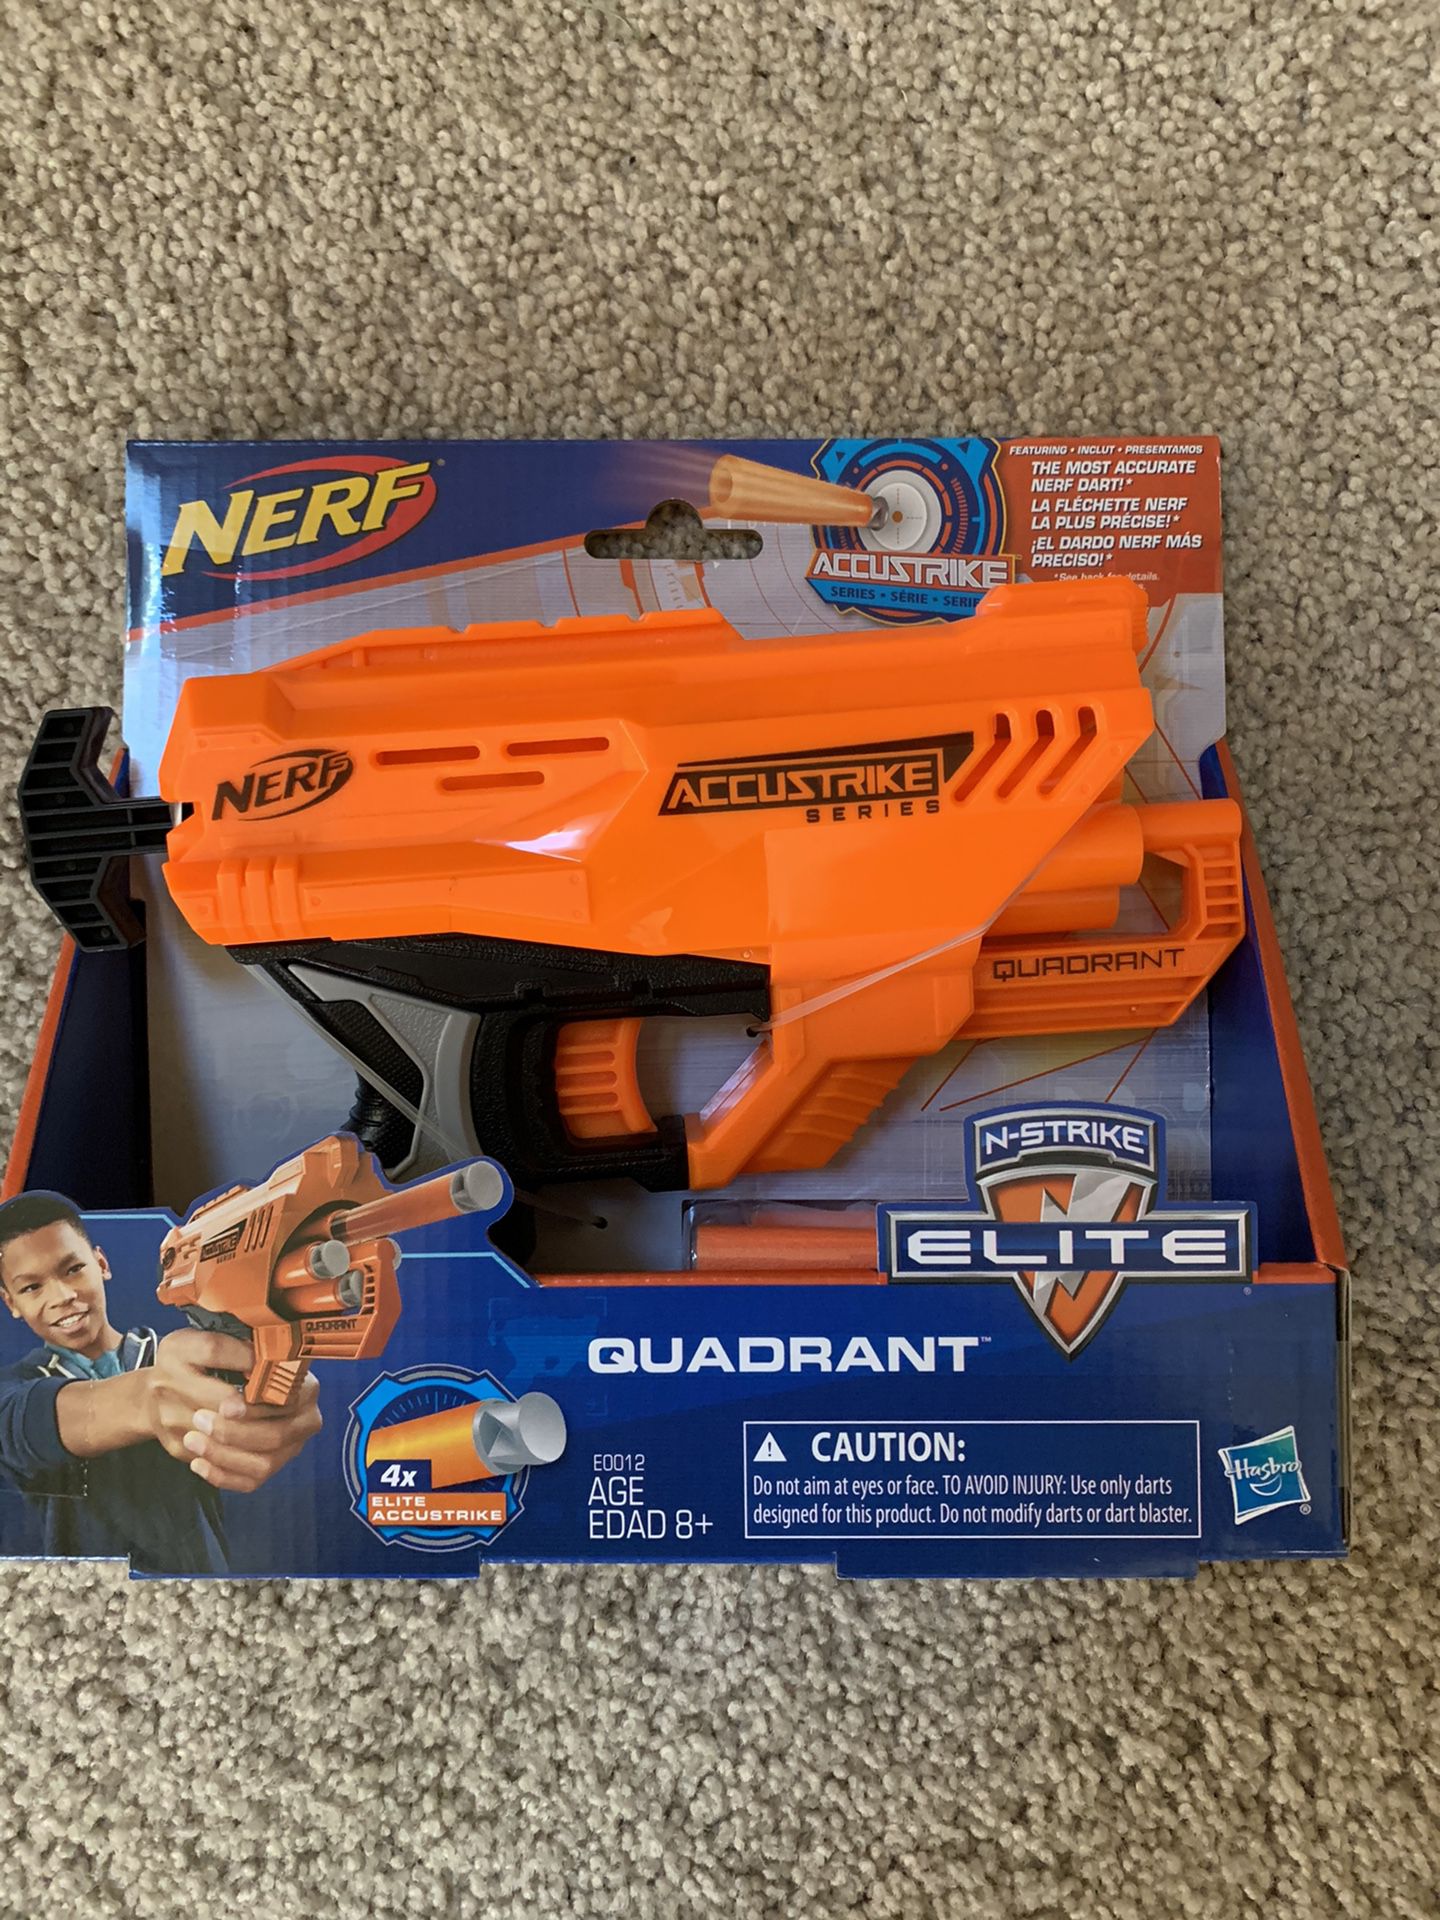 NERF Quadrant guns